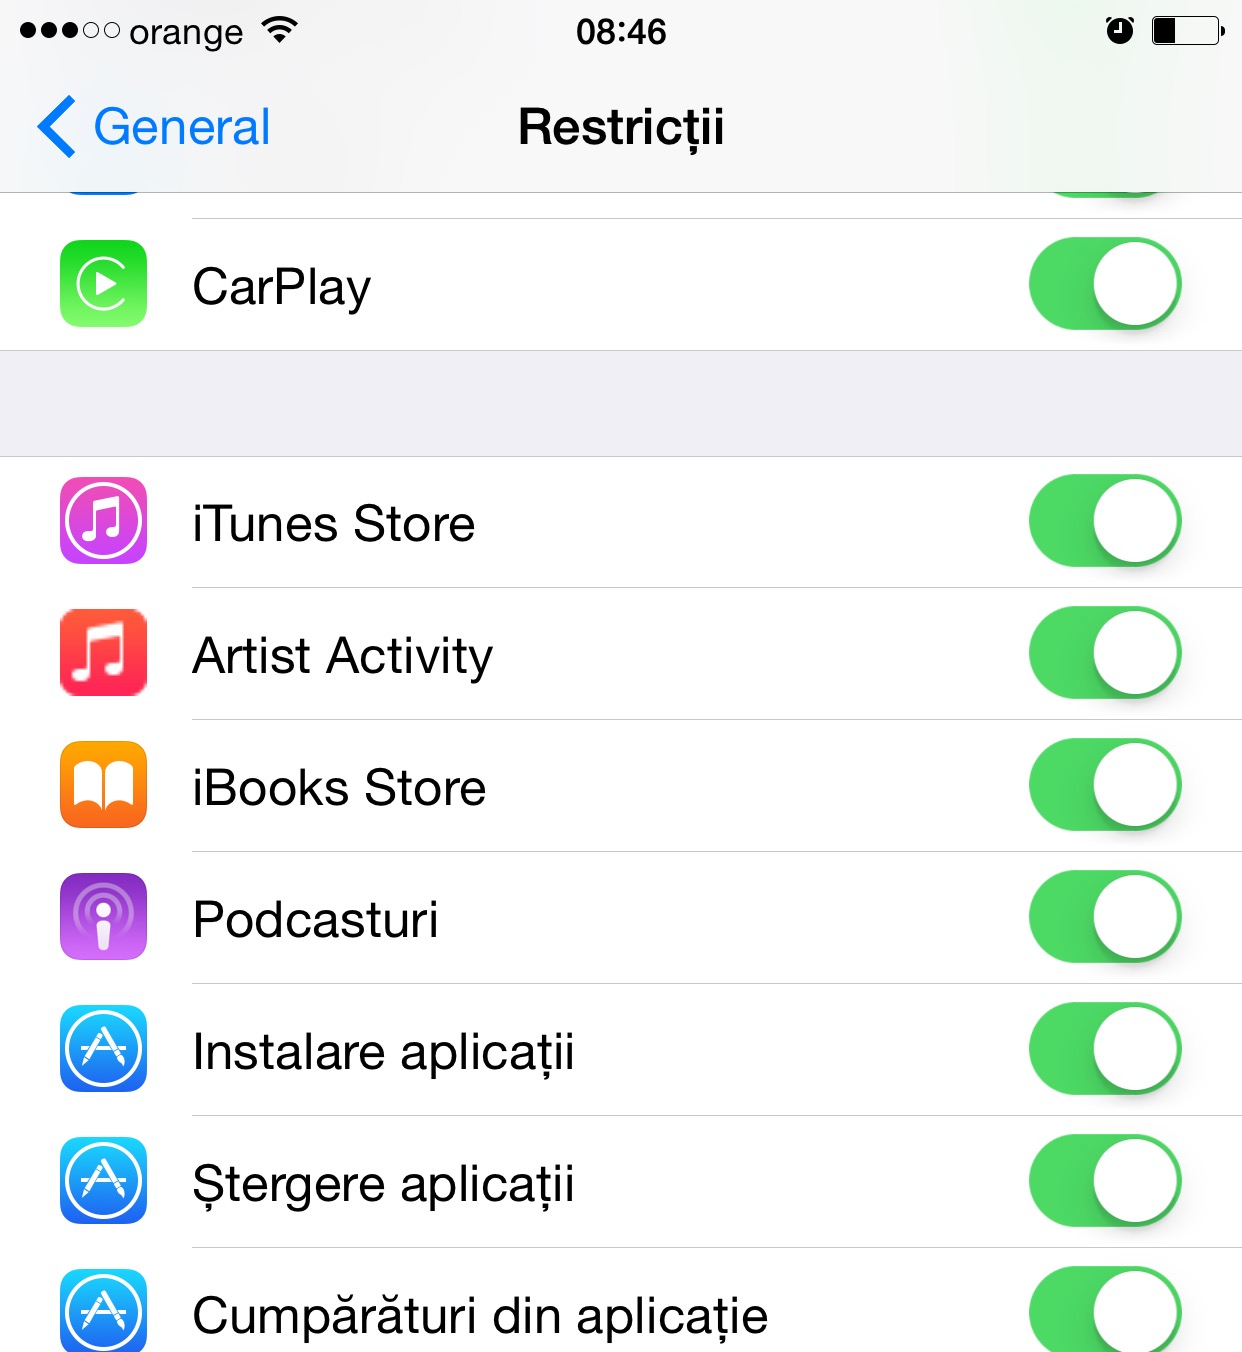 Apple Music iOS 8.4 Artist Activity